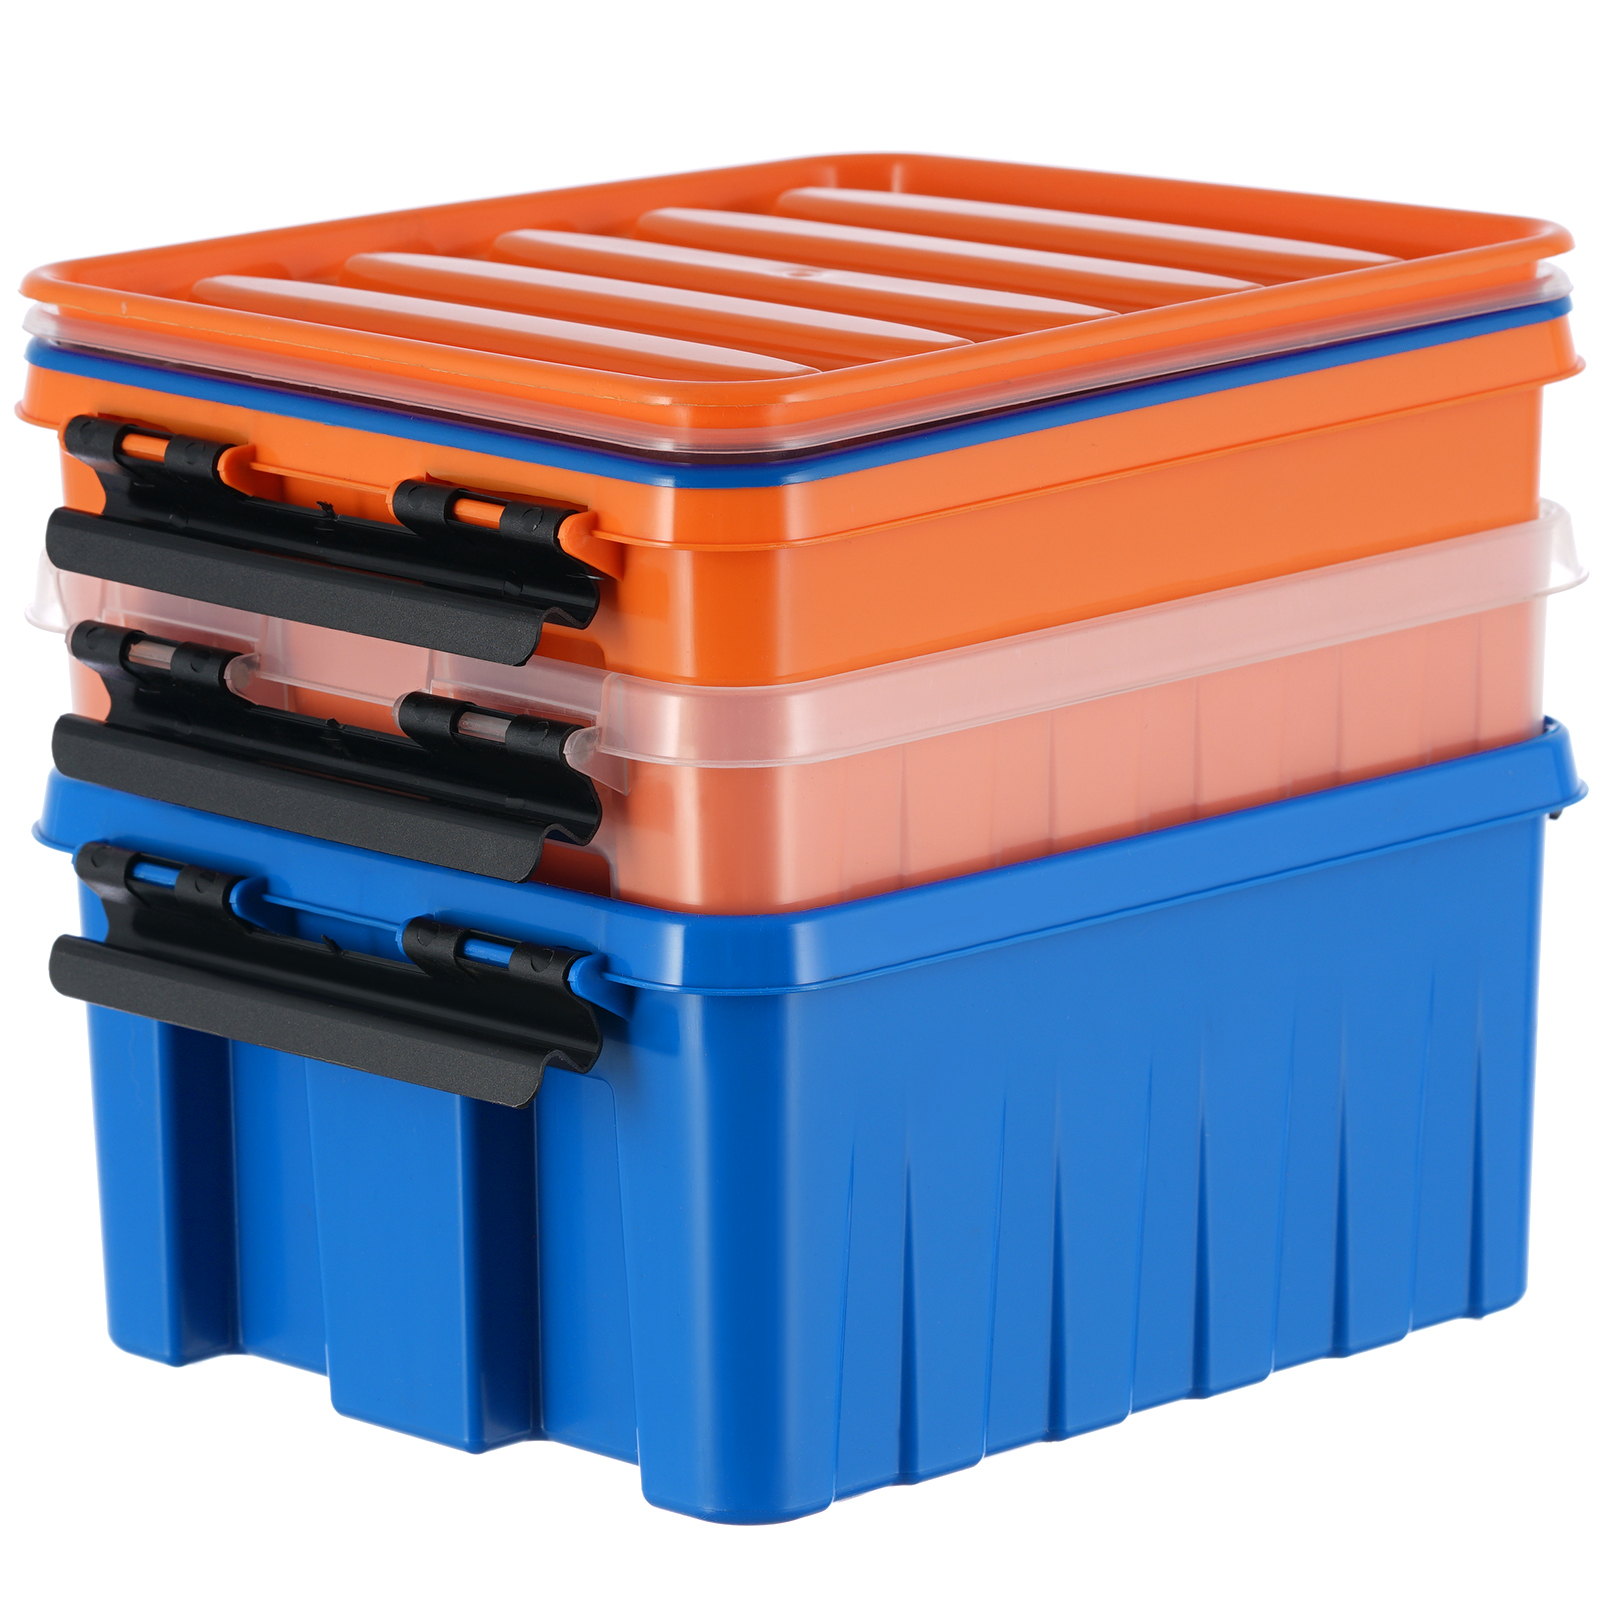 Контейнер ROXBOX 2.5 Л. Rox Box контейнеры. Контейнер пластиковый ROXBOX. Контейнер с крышкой Rox Box 2,5 л.. Rox box 120